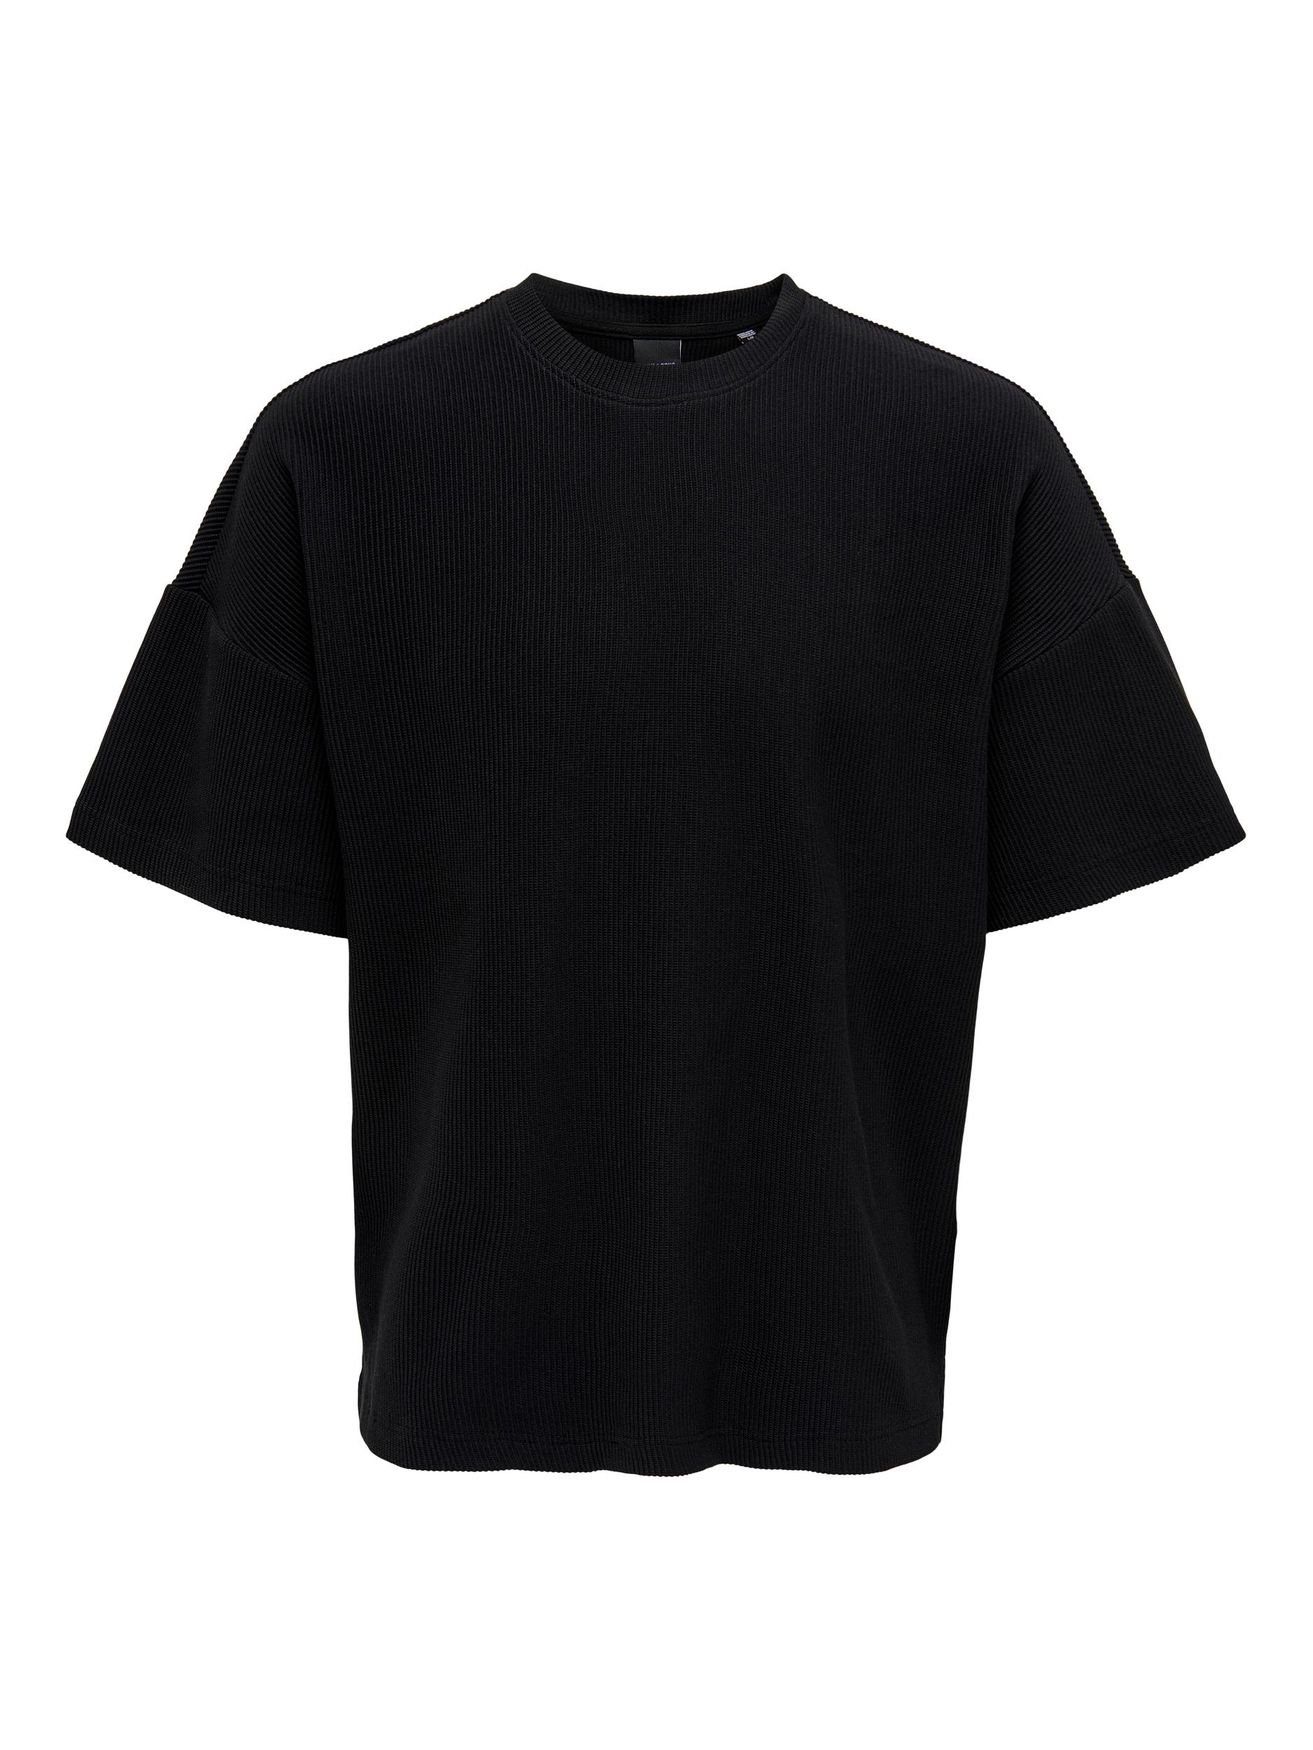 in ONSBERKELEY Kurzarm & Shirt Basic T-Shirt ONLY 4791 Schwarz SONS Rundhals T-Shirt Weites